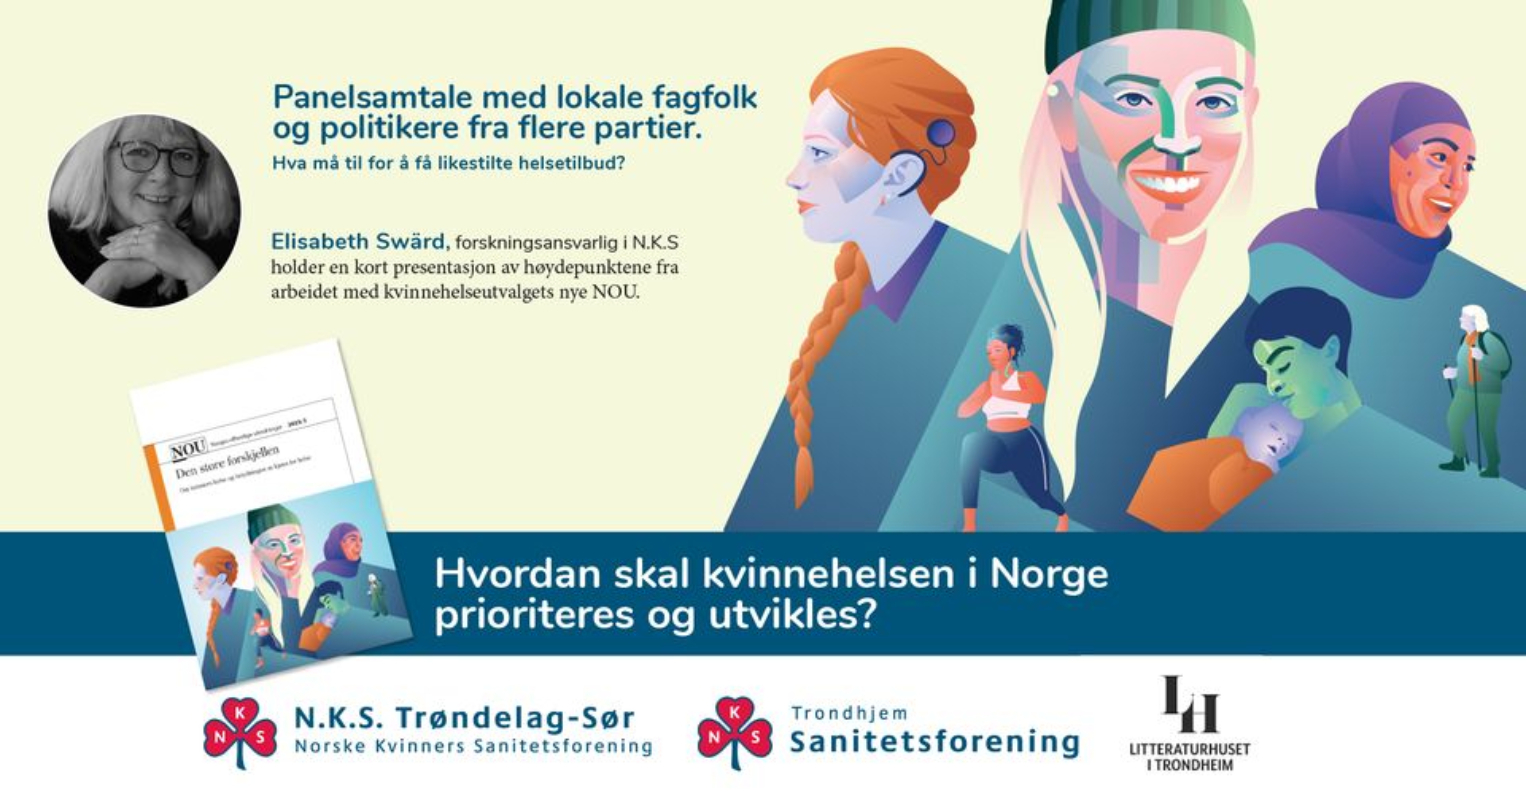 Hvordan skal kvinnehelsen i Norge prioriteres og utvikles?